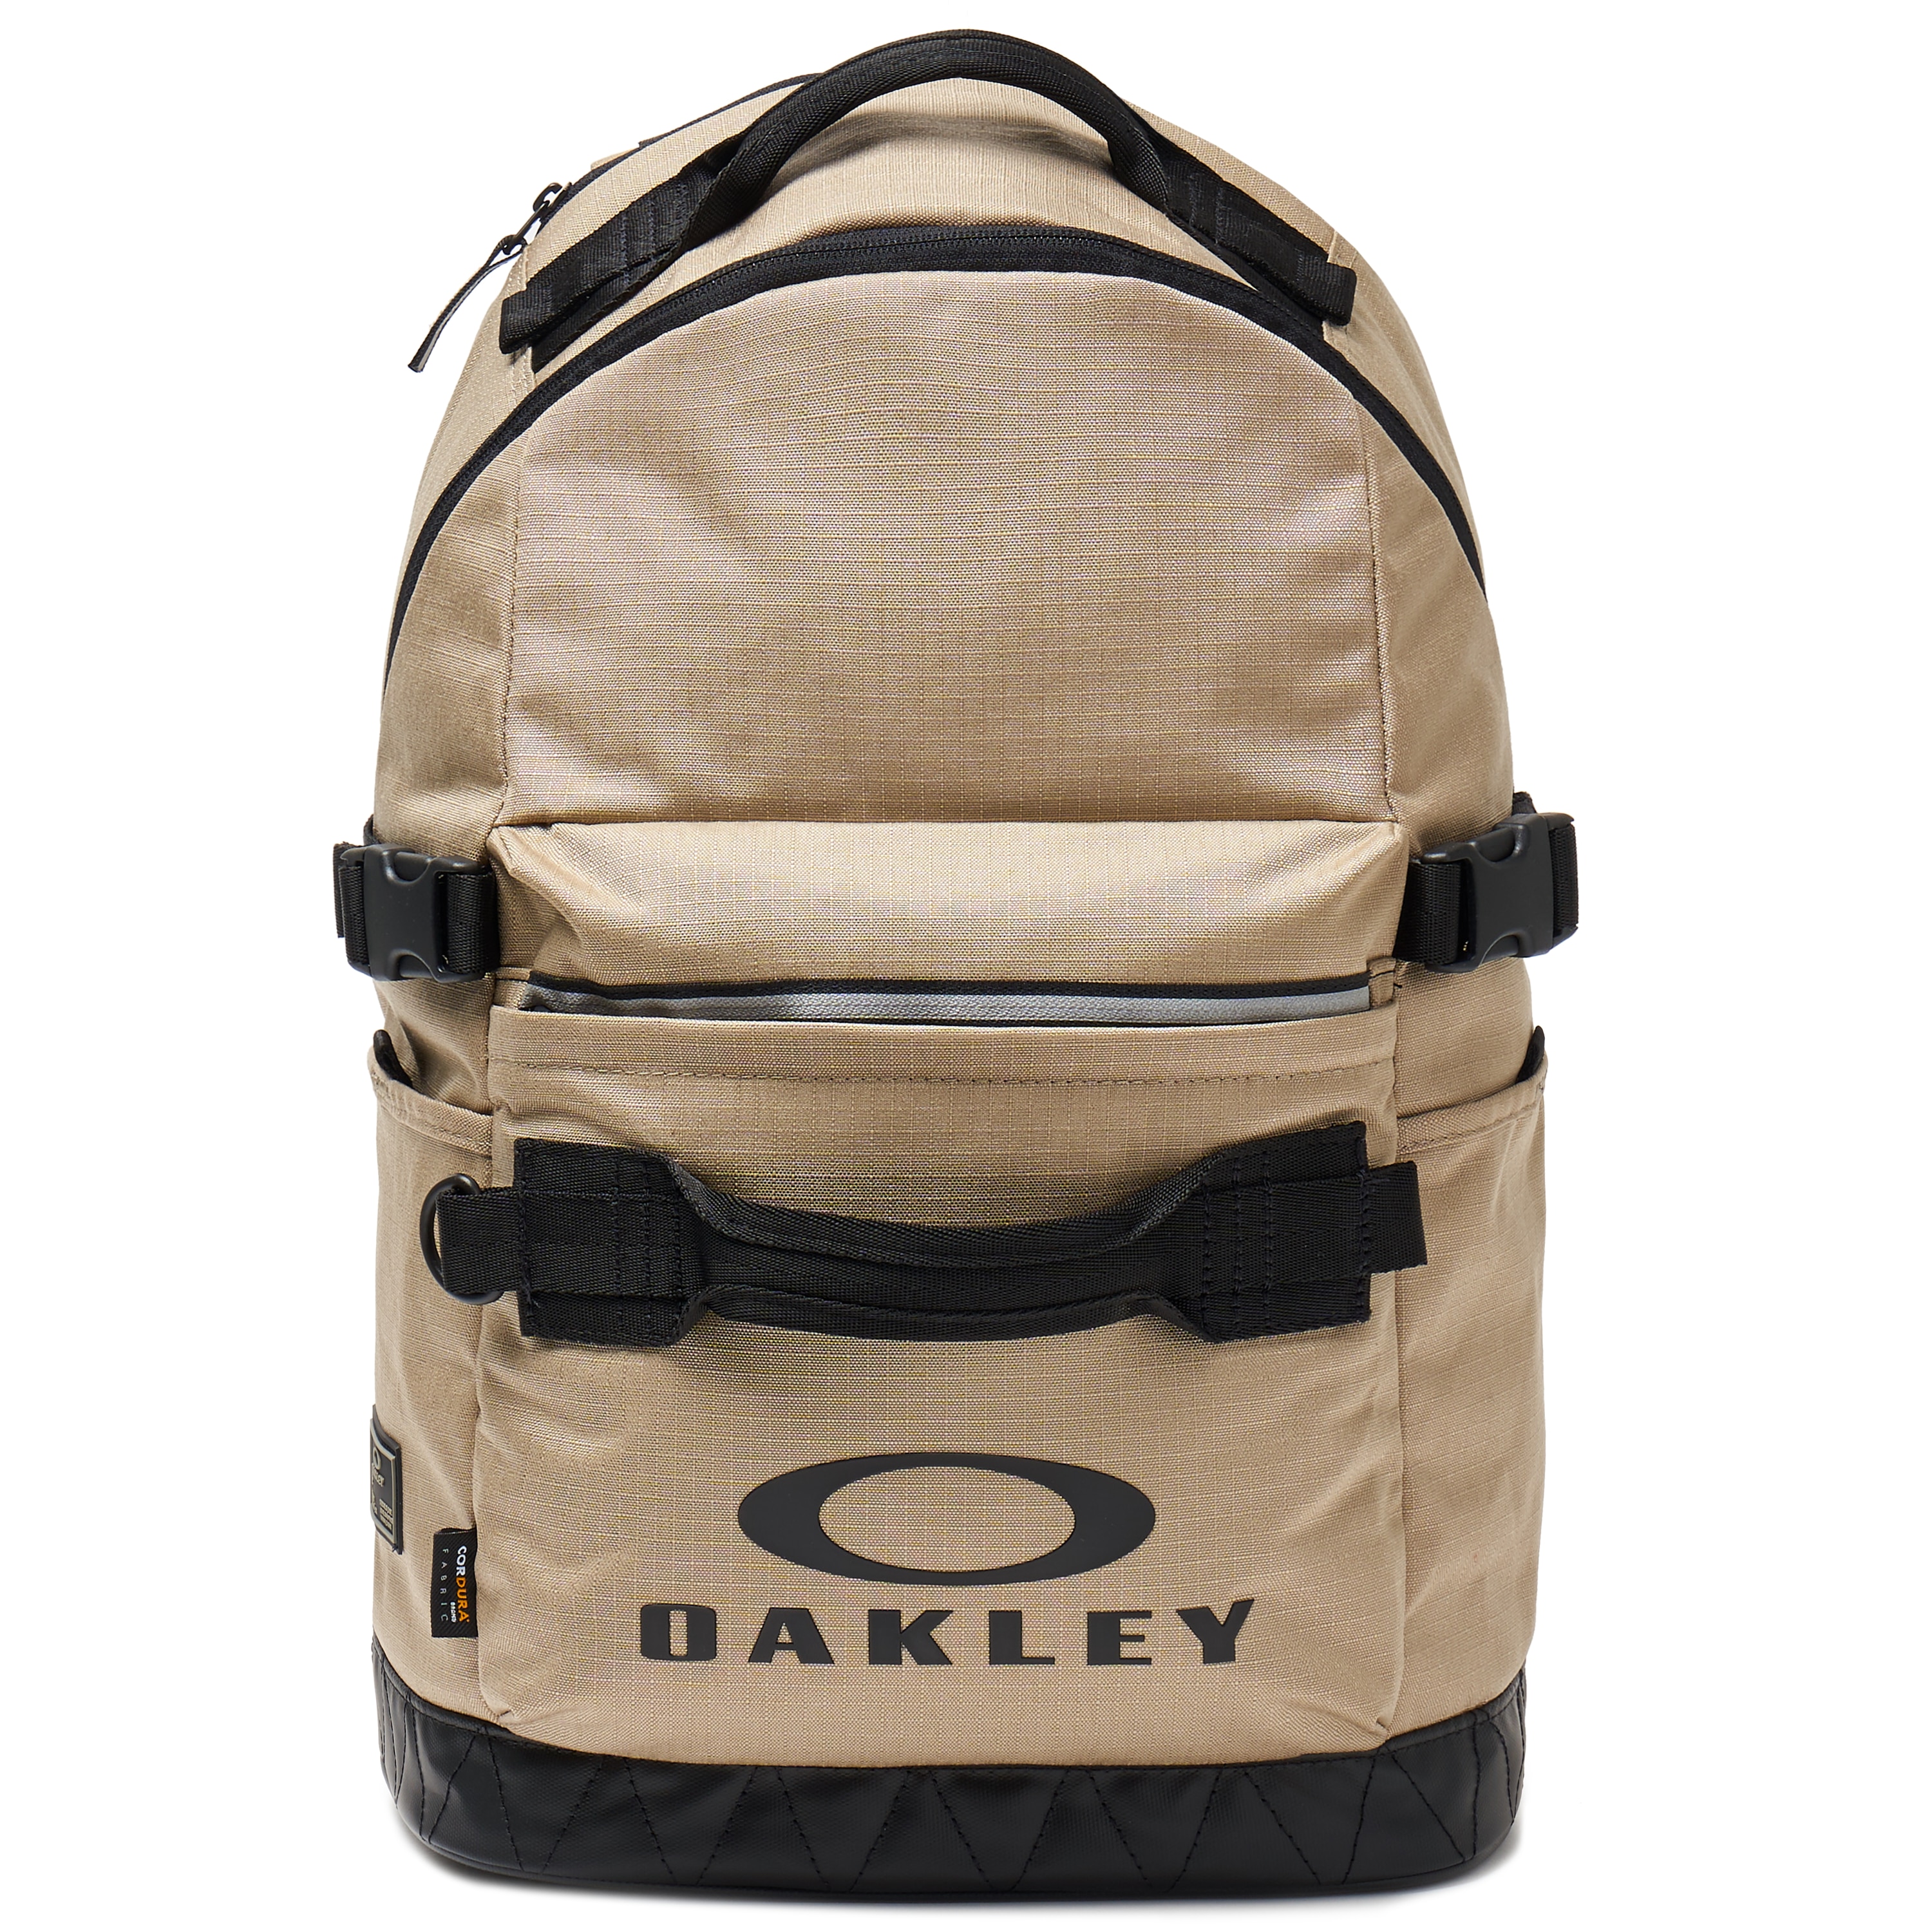 oakley daypack